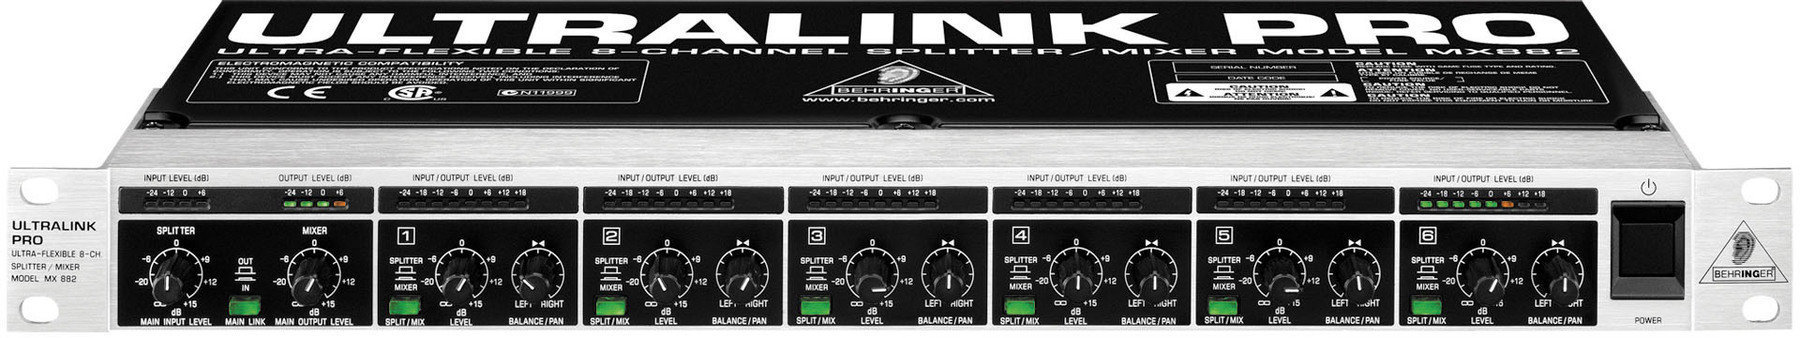 Mixer de rack Behringer MX 882 ULTRALINK PRO